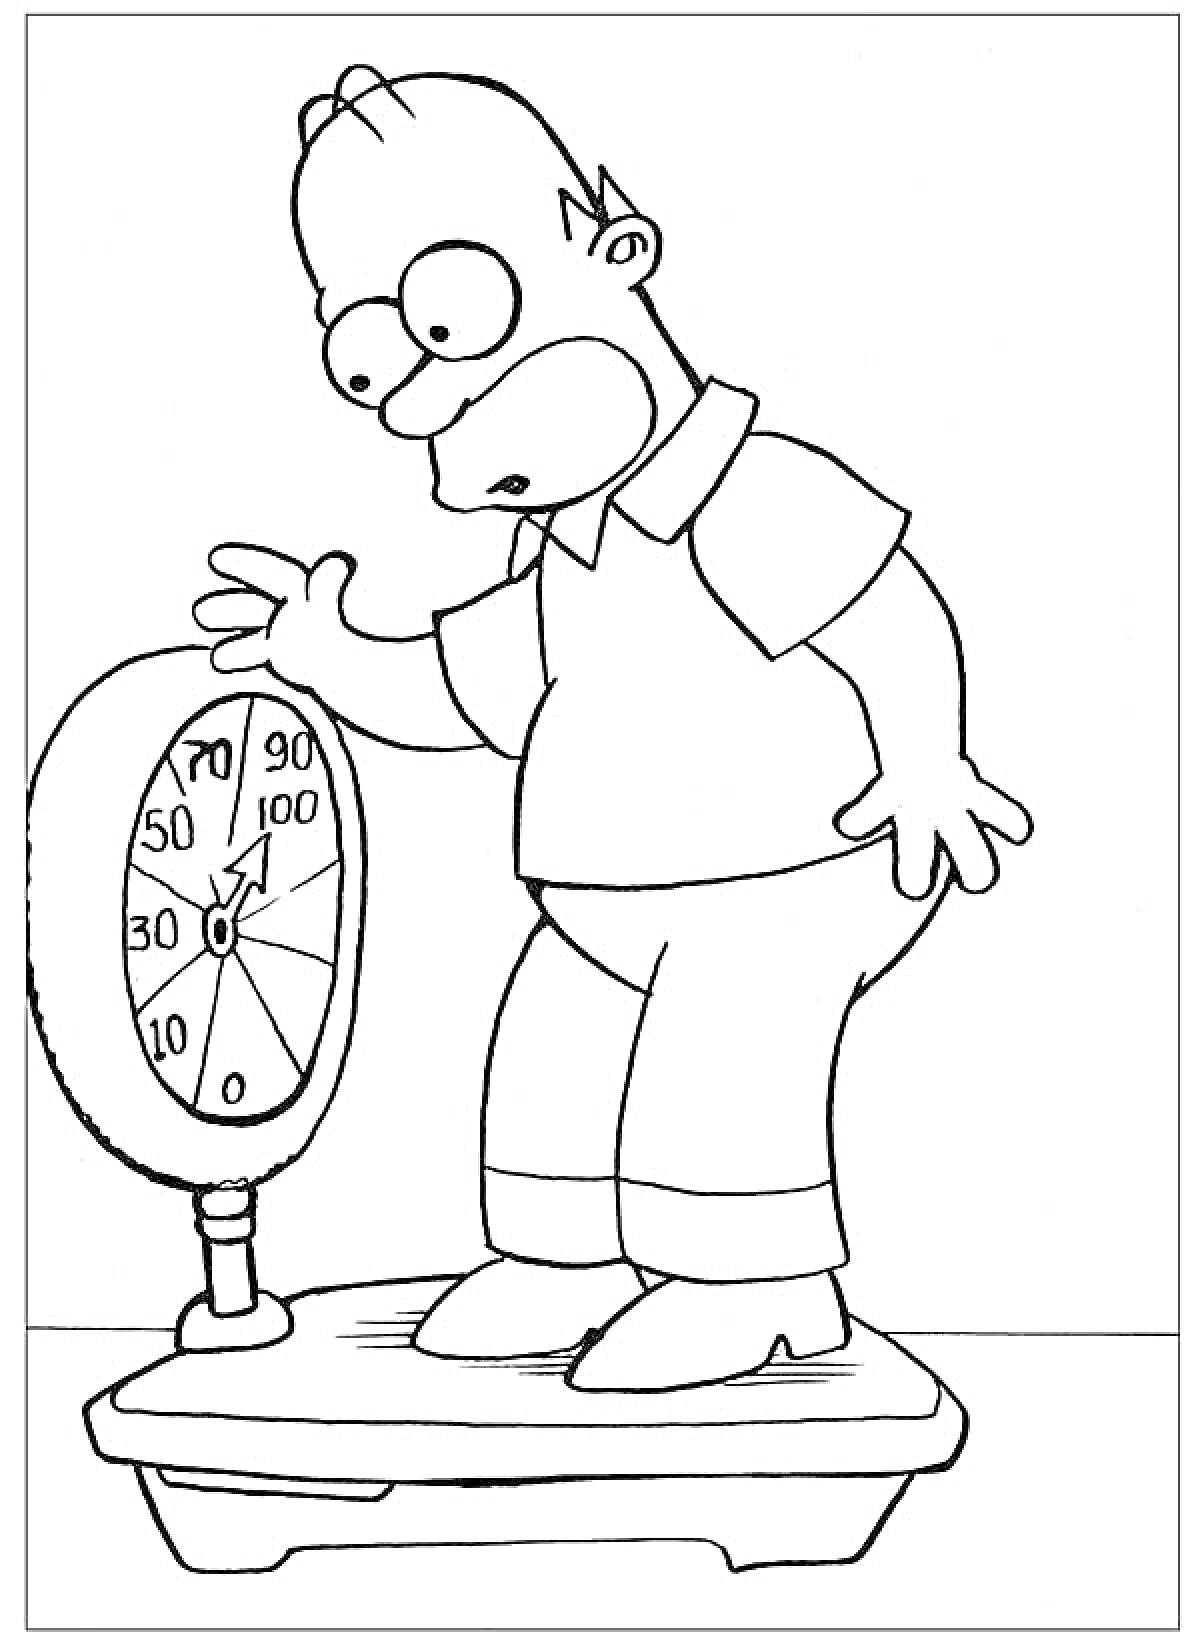 Раскраска Мужчина на весах, обеспокоенно смотрящий на показания весов